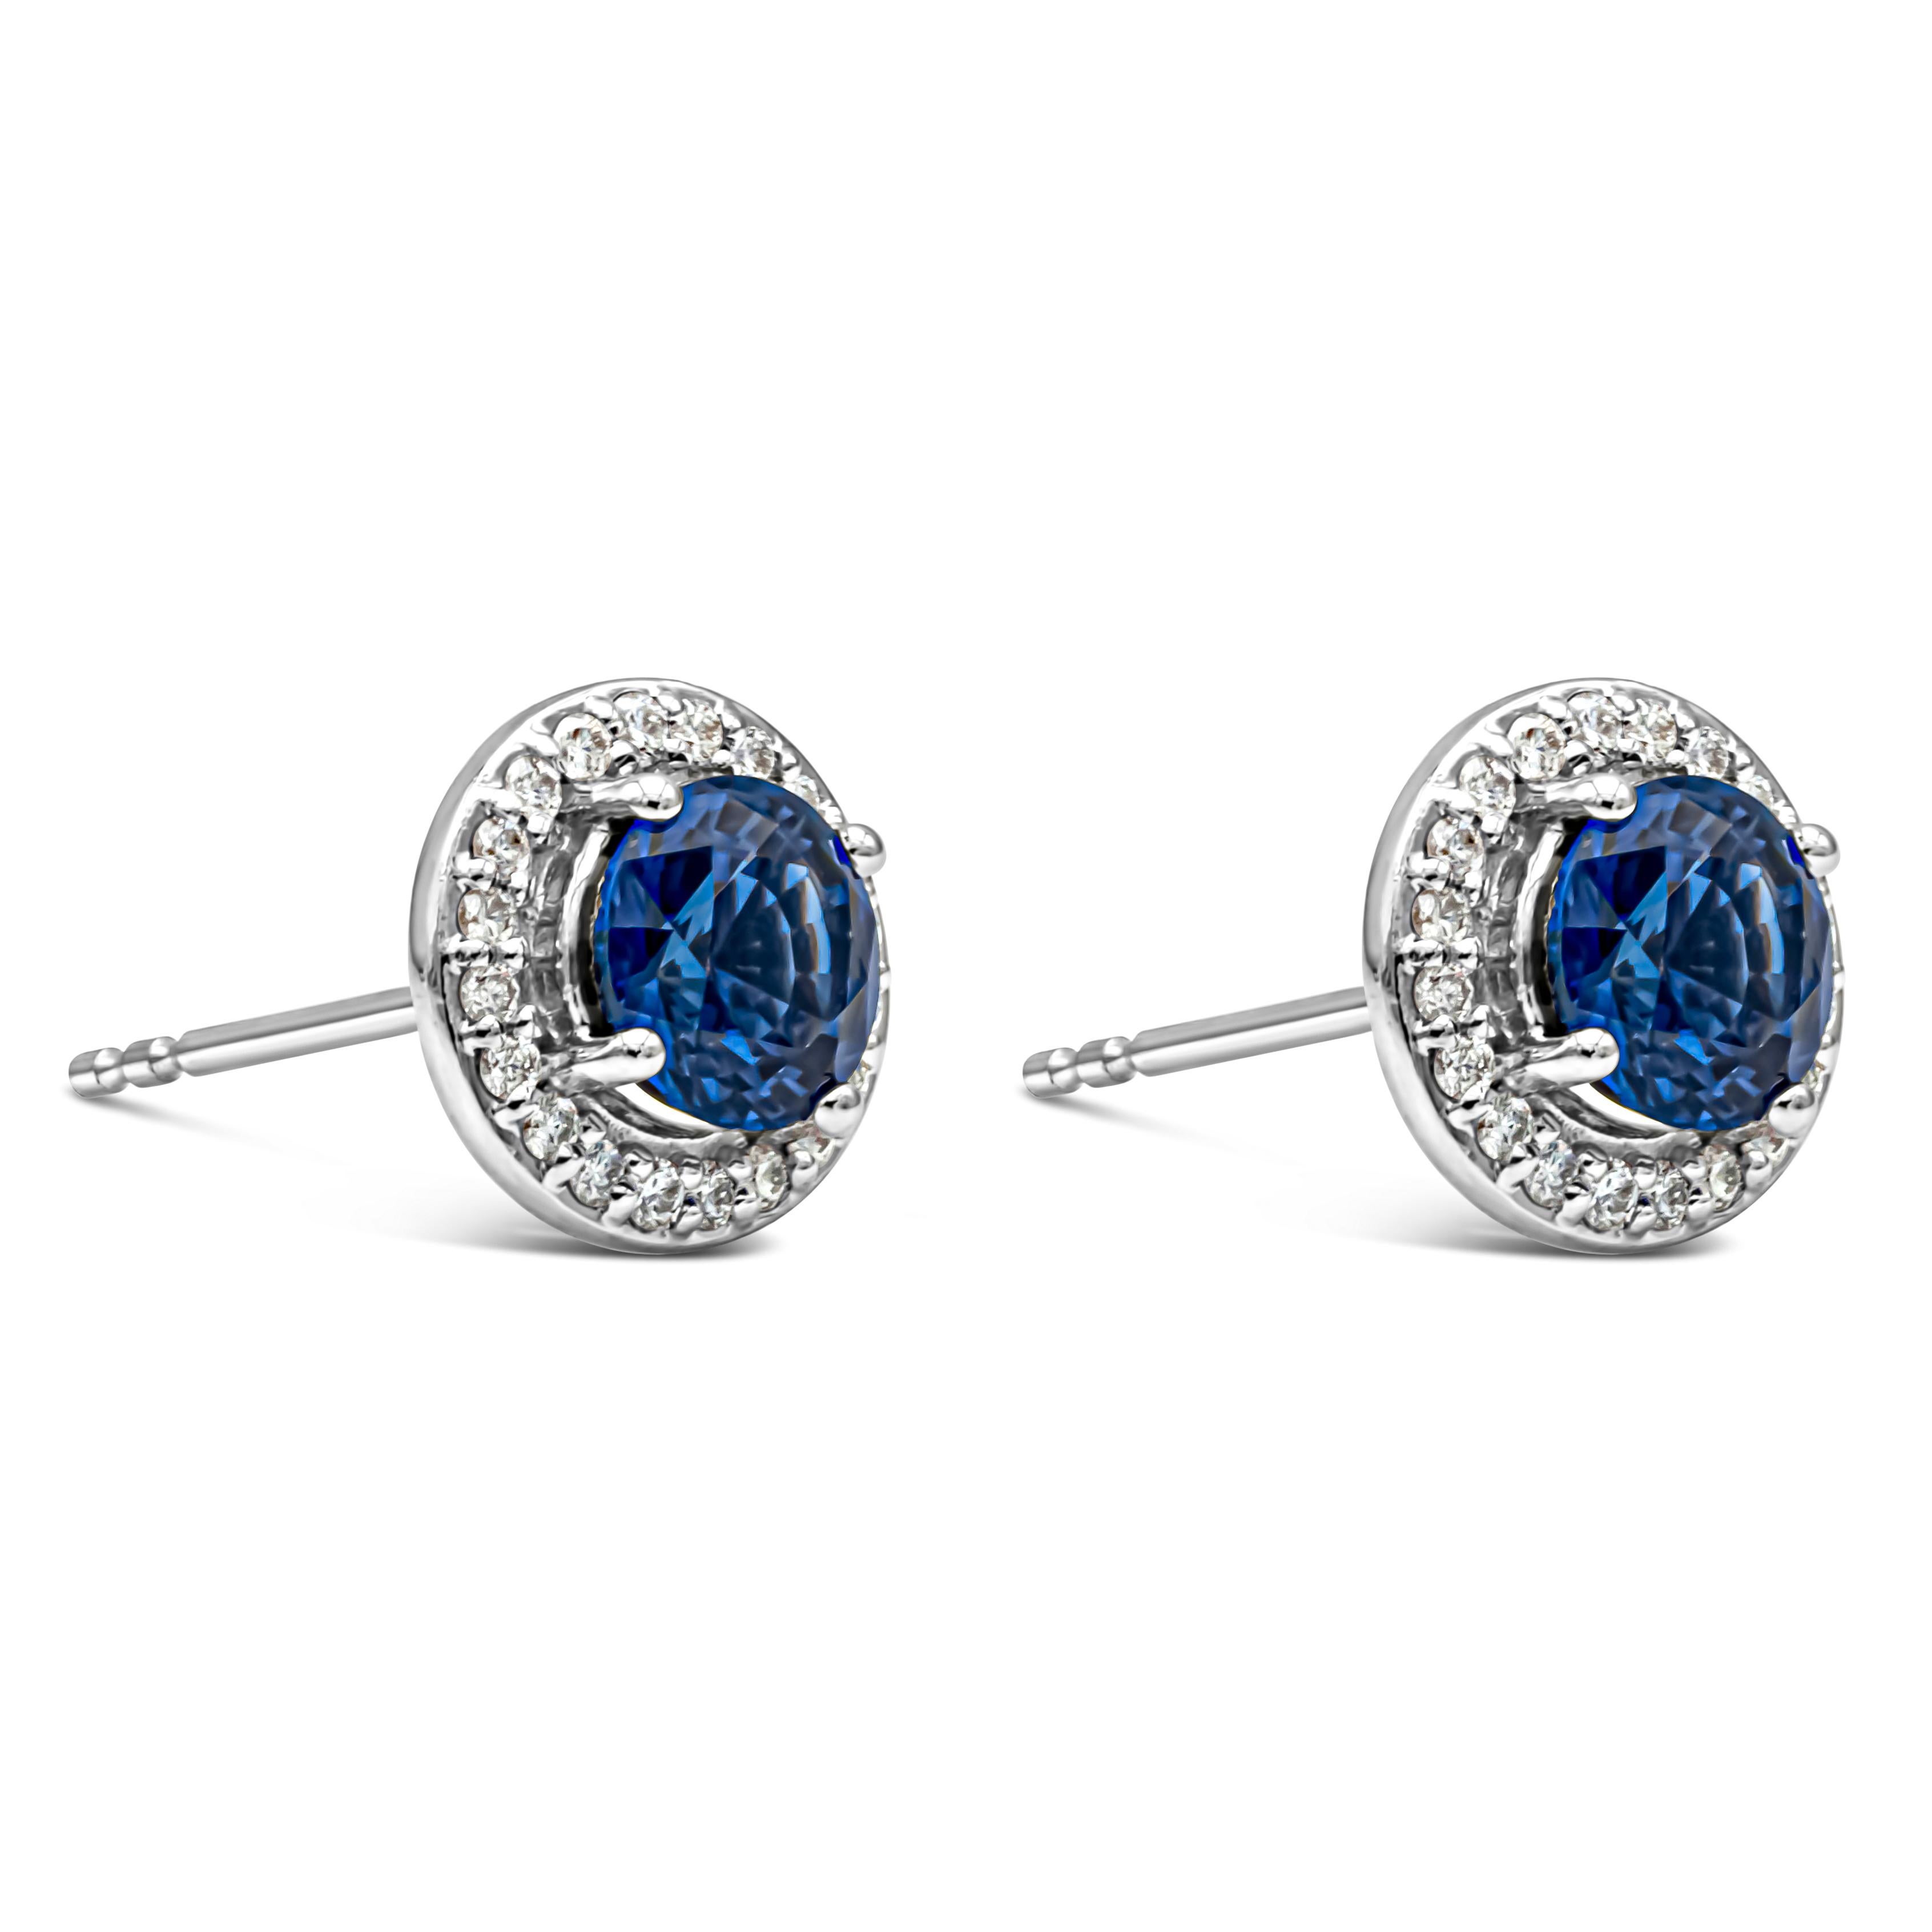 Une paire de boucles d'oreilles simples et polyvalentes mettant en valeur des saphirs bleus royaux ronds de 1,52 carats au total, sertis dans une monture panier à quatre griffes. Entouré d'une seule rangée de diamants ronds brillants pesant 0,21